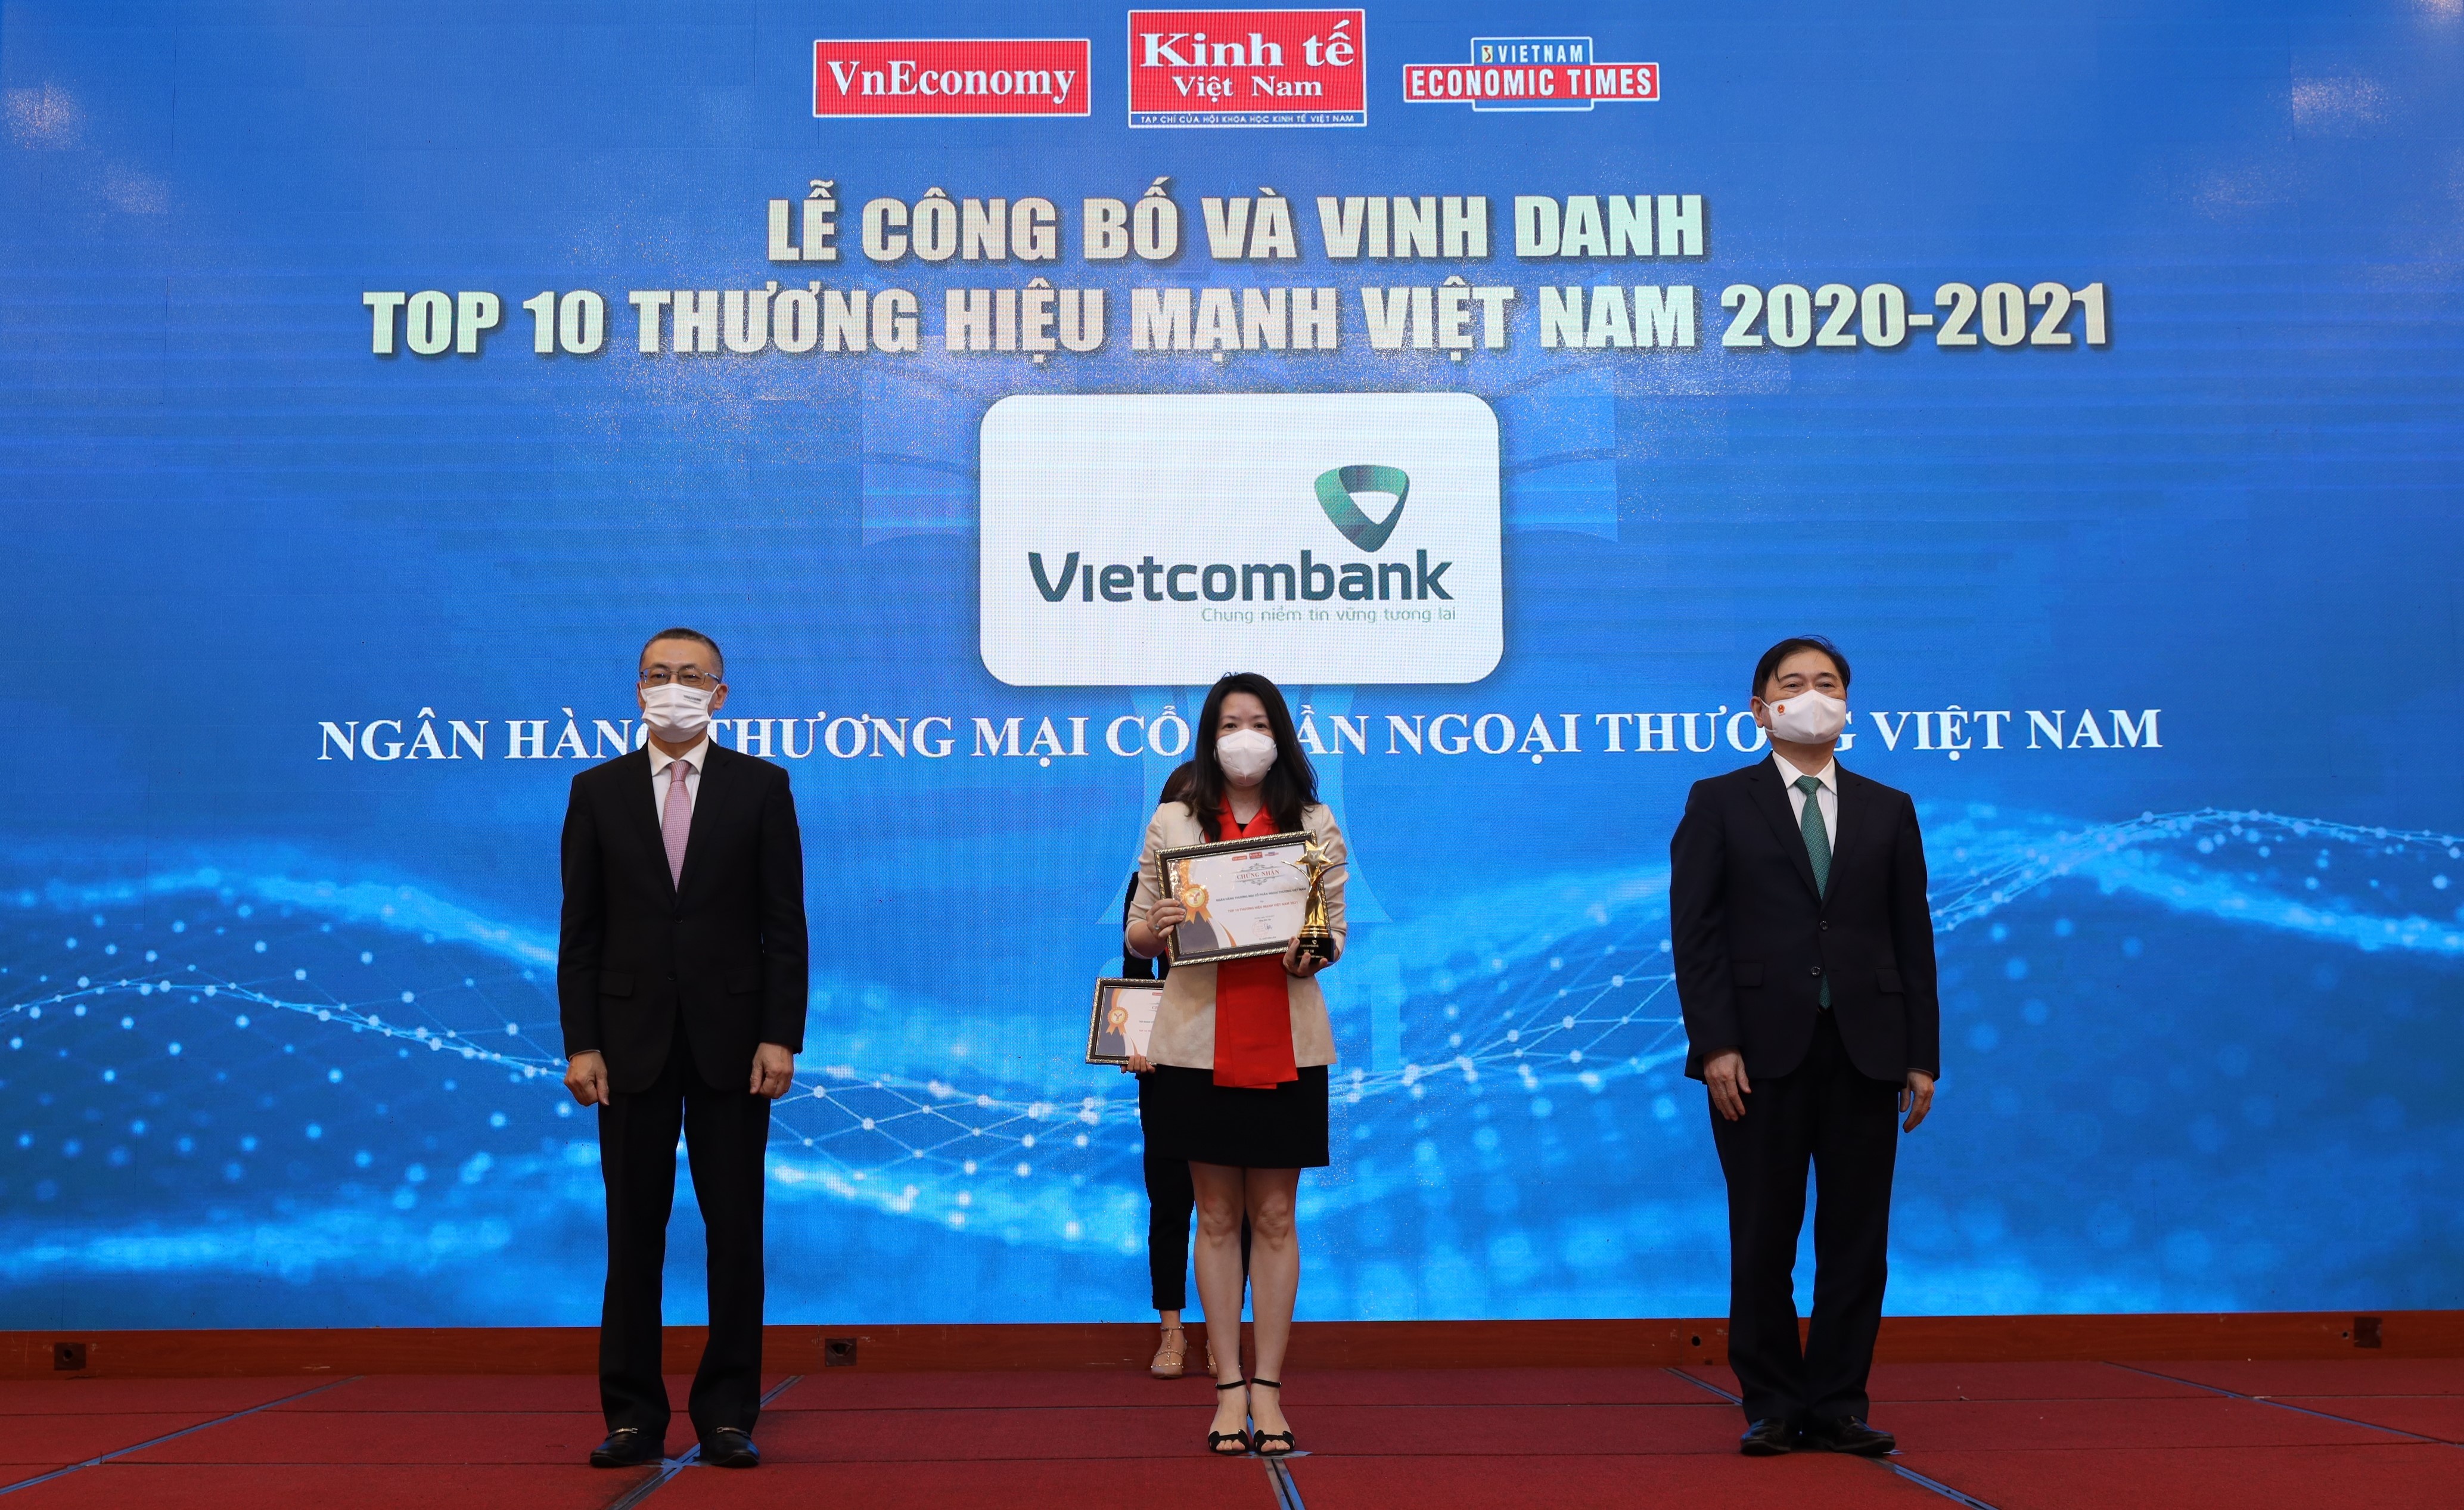 vietcombank top 10 thuong hieu manh viet nam nam 2020 2021